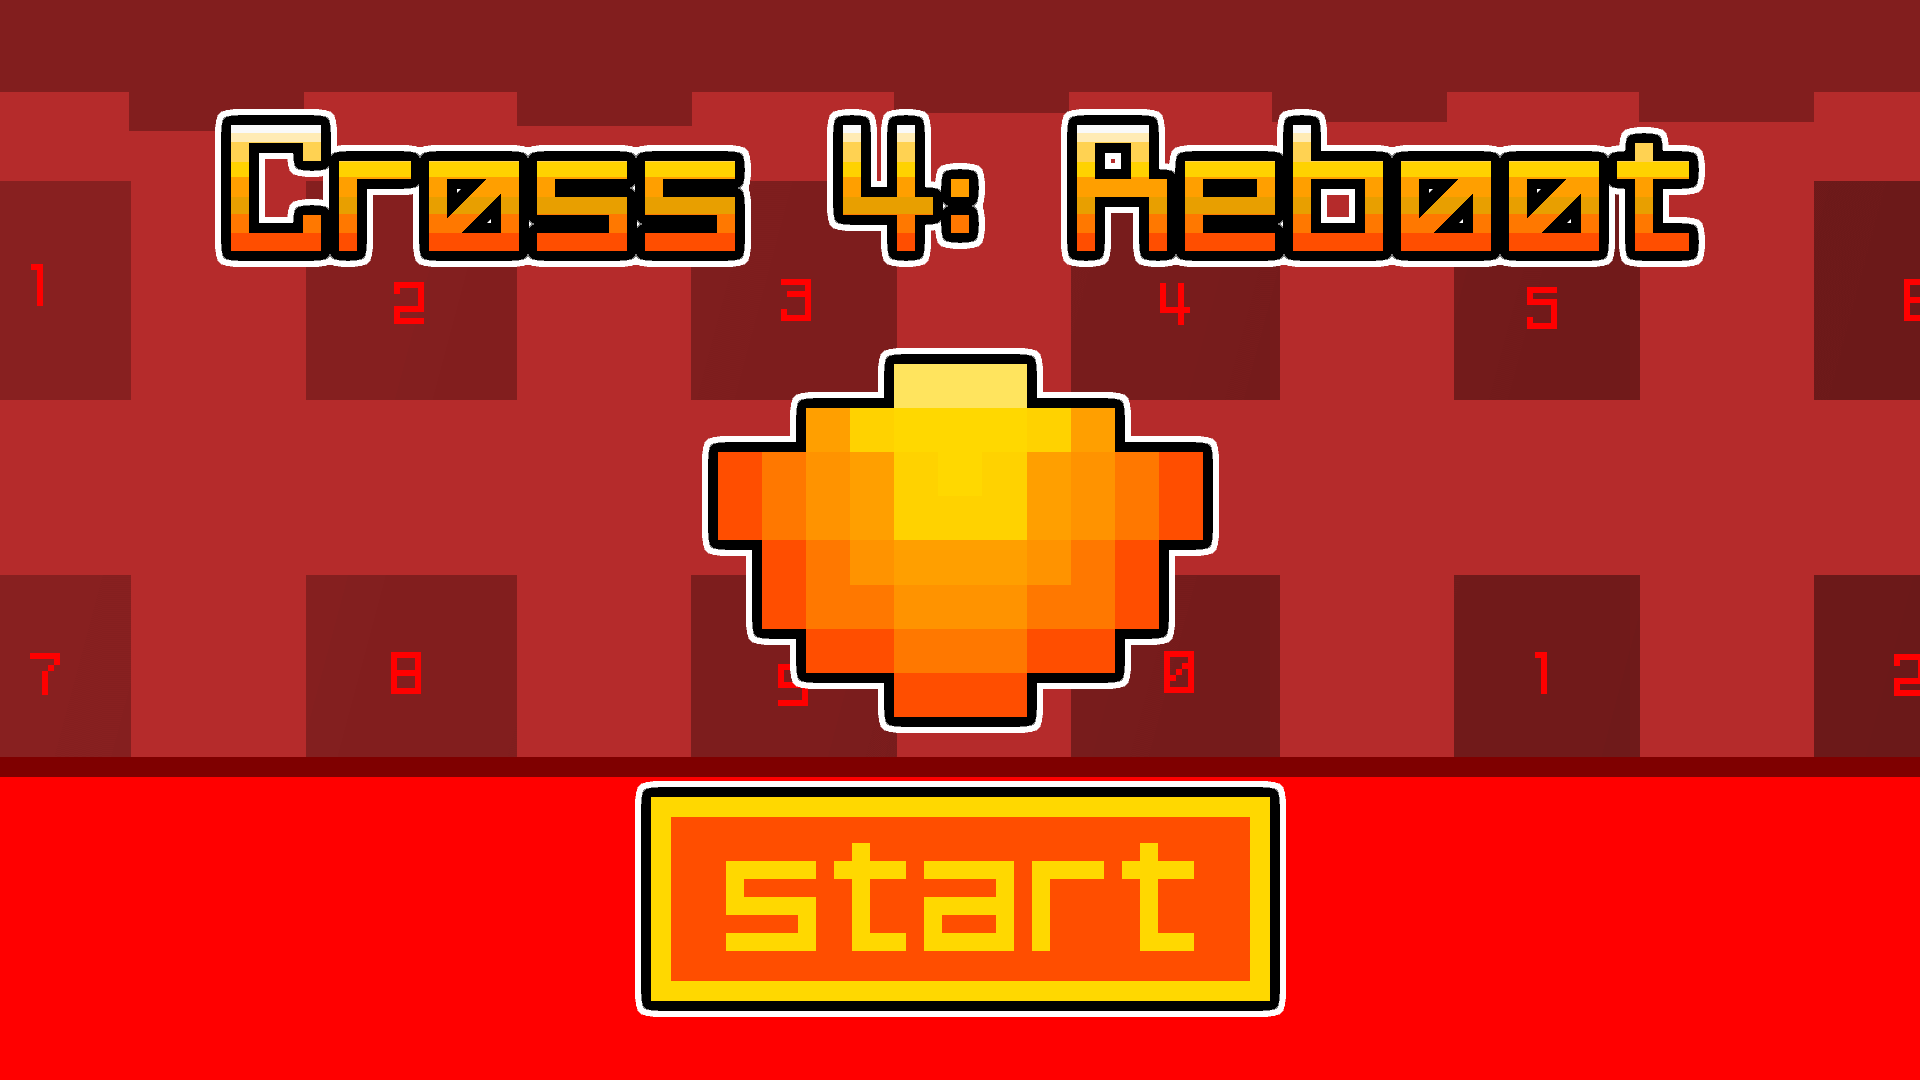 Cross 4: Reboot